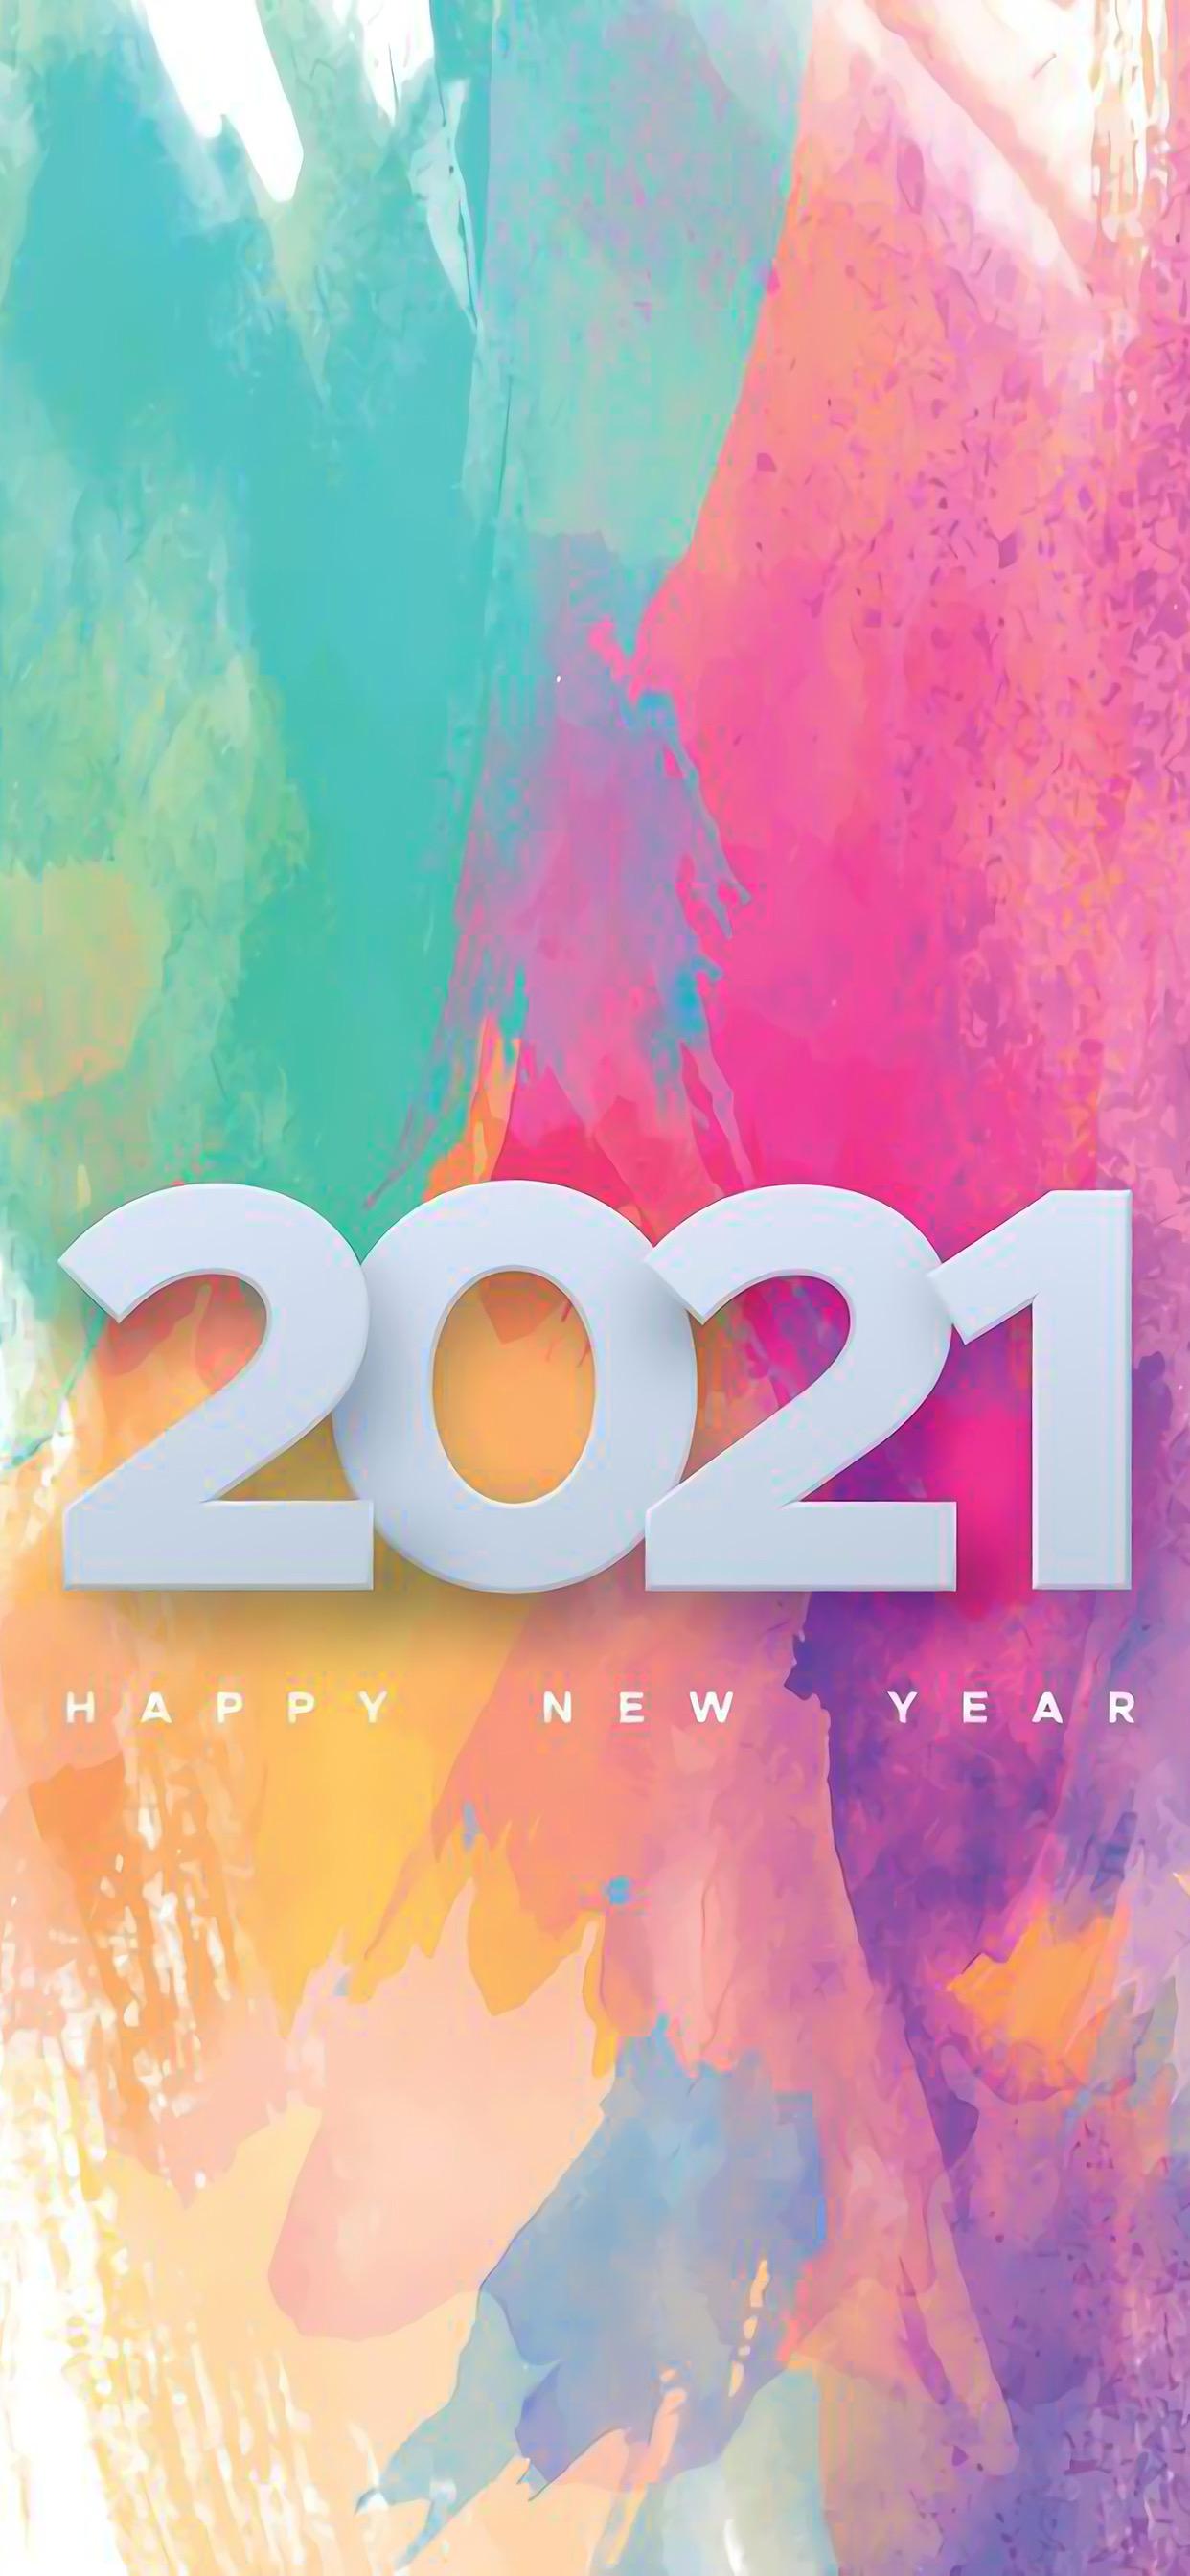 有什么好的跨年壁纸可以在12月31日换上告别2020迎接2021